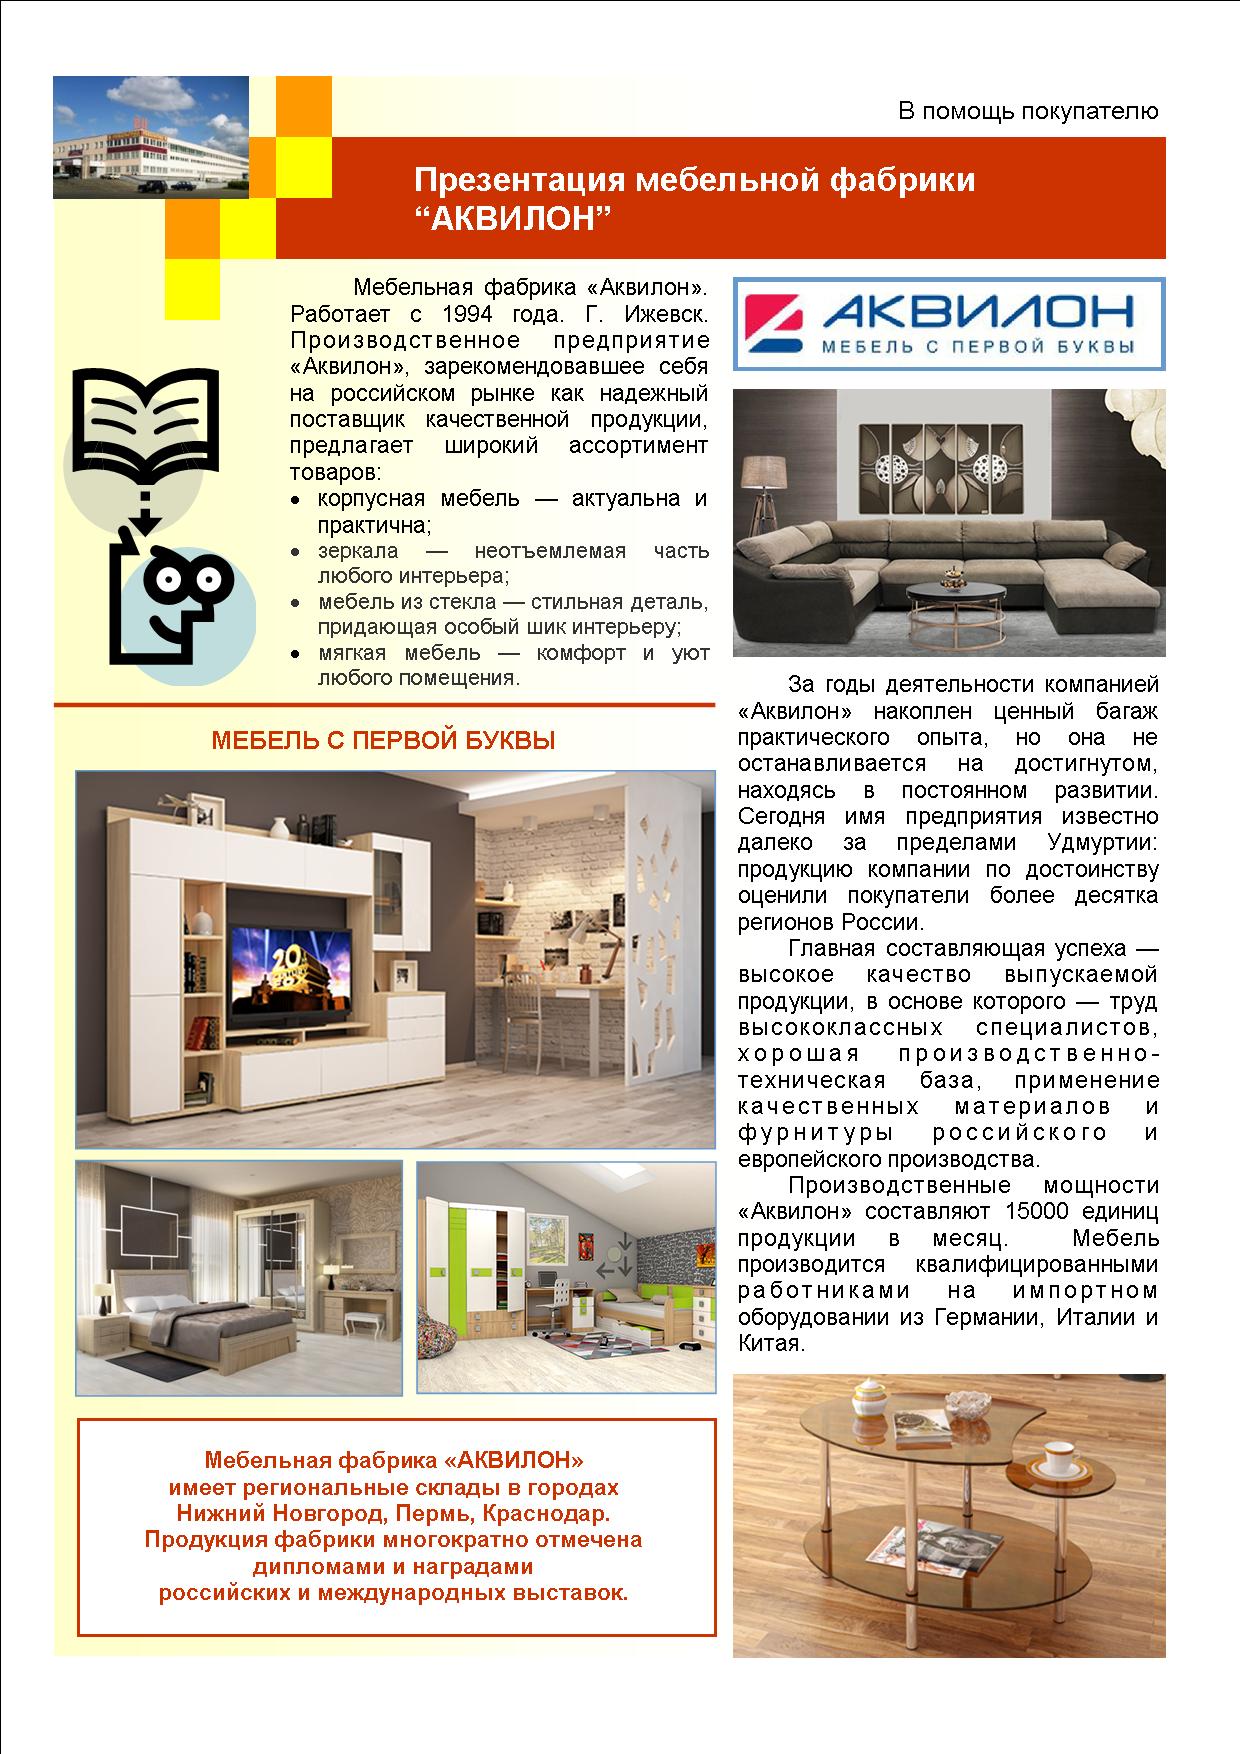 Фабрики по производству мебели в россии список